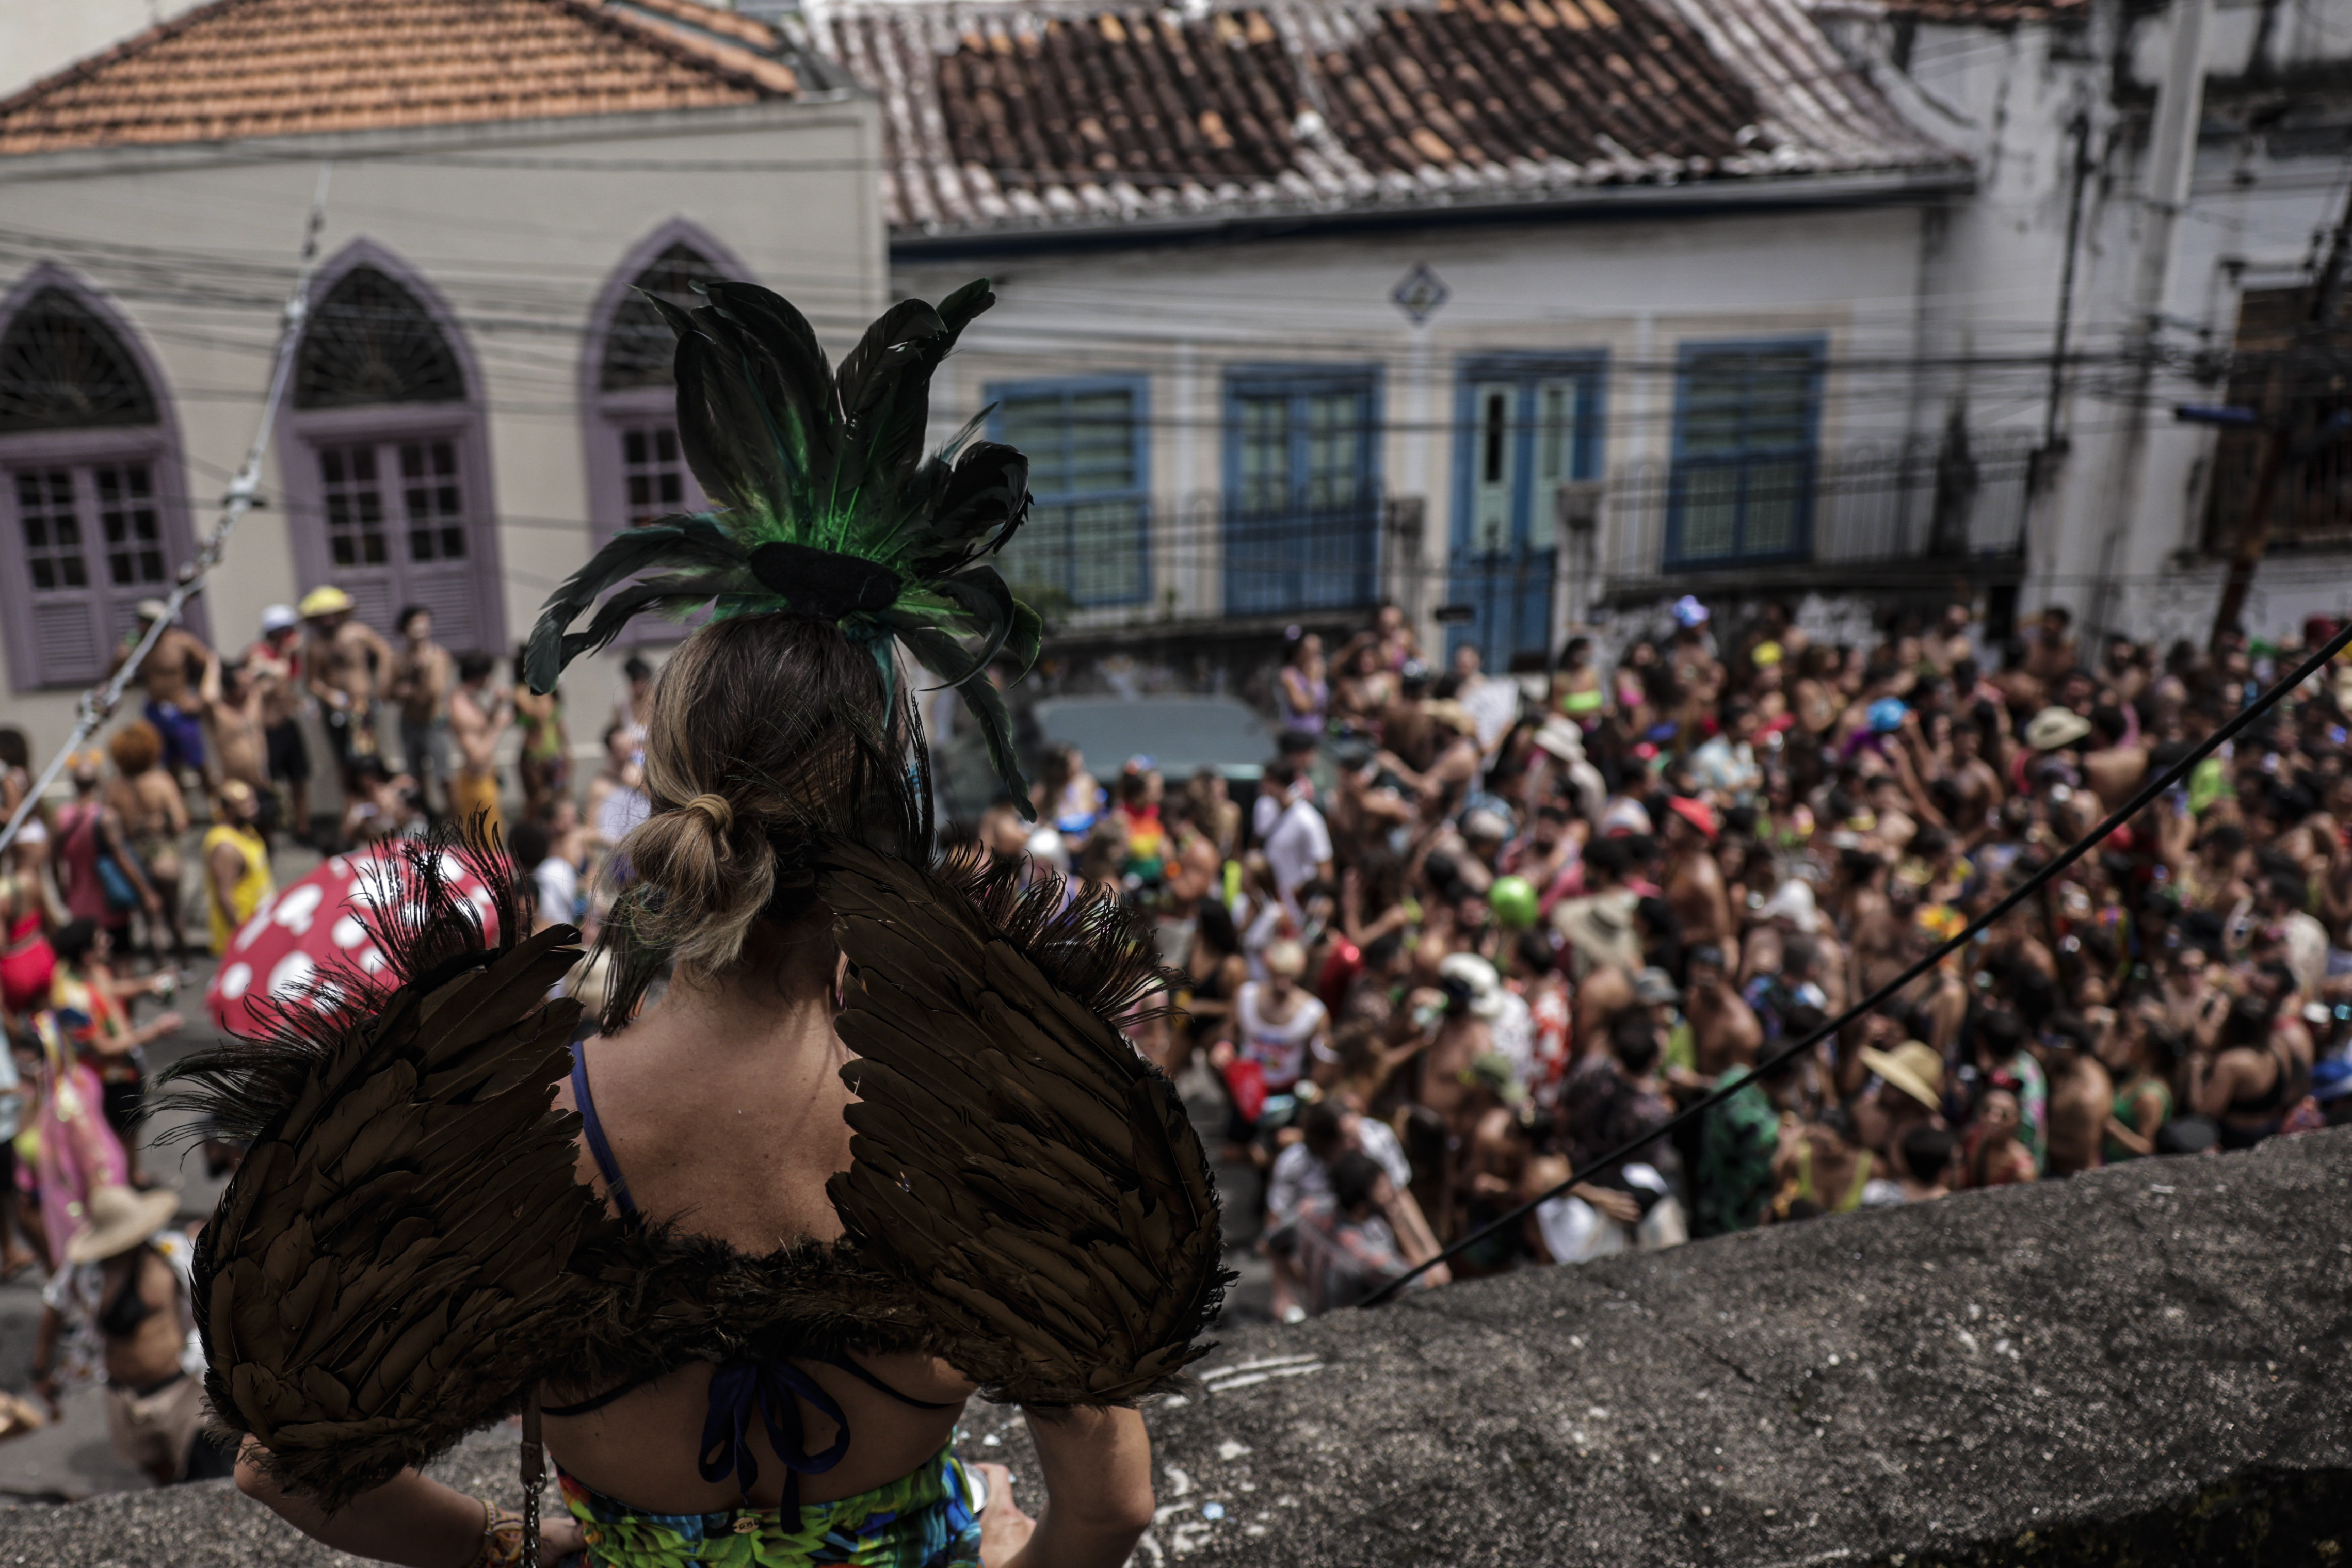 Las comparsas callejeras ponen a vibrar nuevamente al Carnaval de Brasil